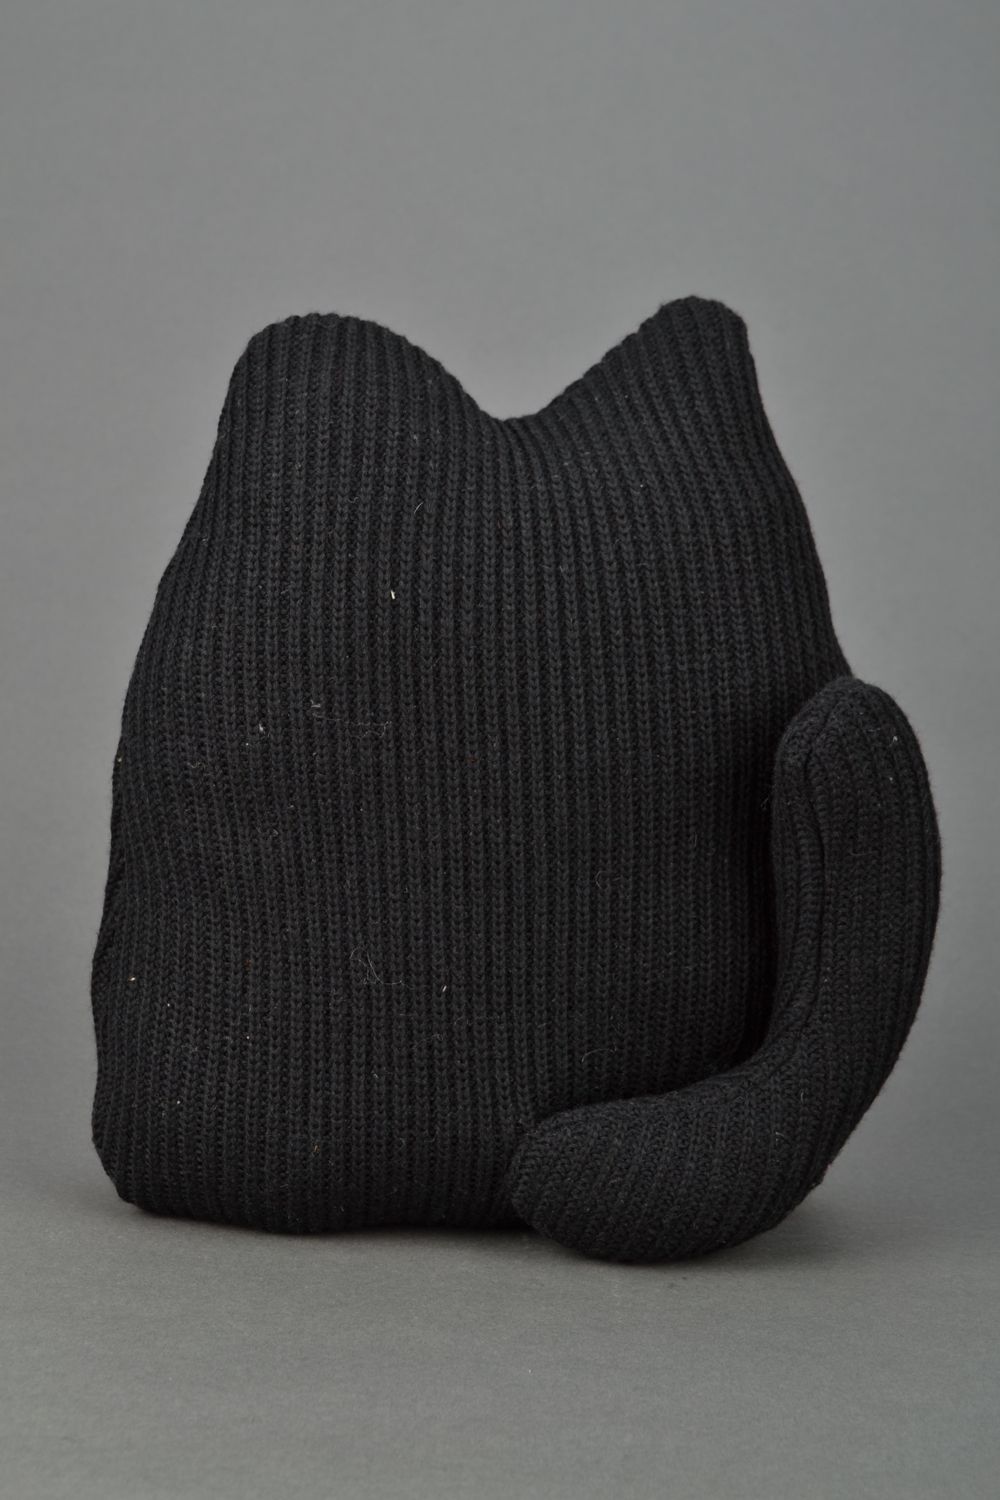 Jouet-coussin en tissu fait main original Chat noir photo 4